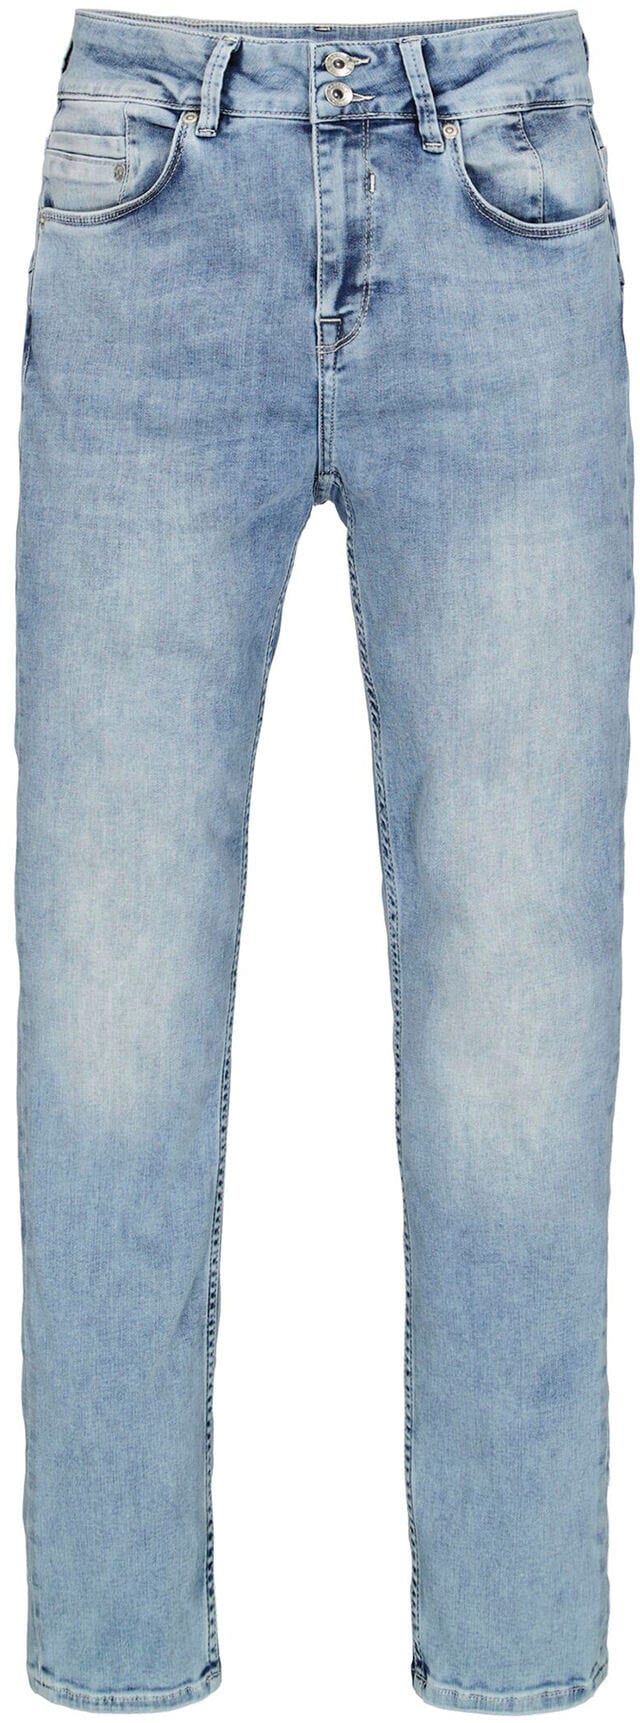 Slim-fit-Jeans Garcia slim OTTO »Caro bei curved« bestellen